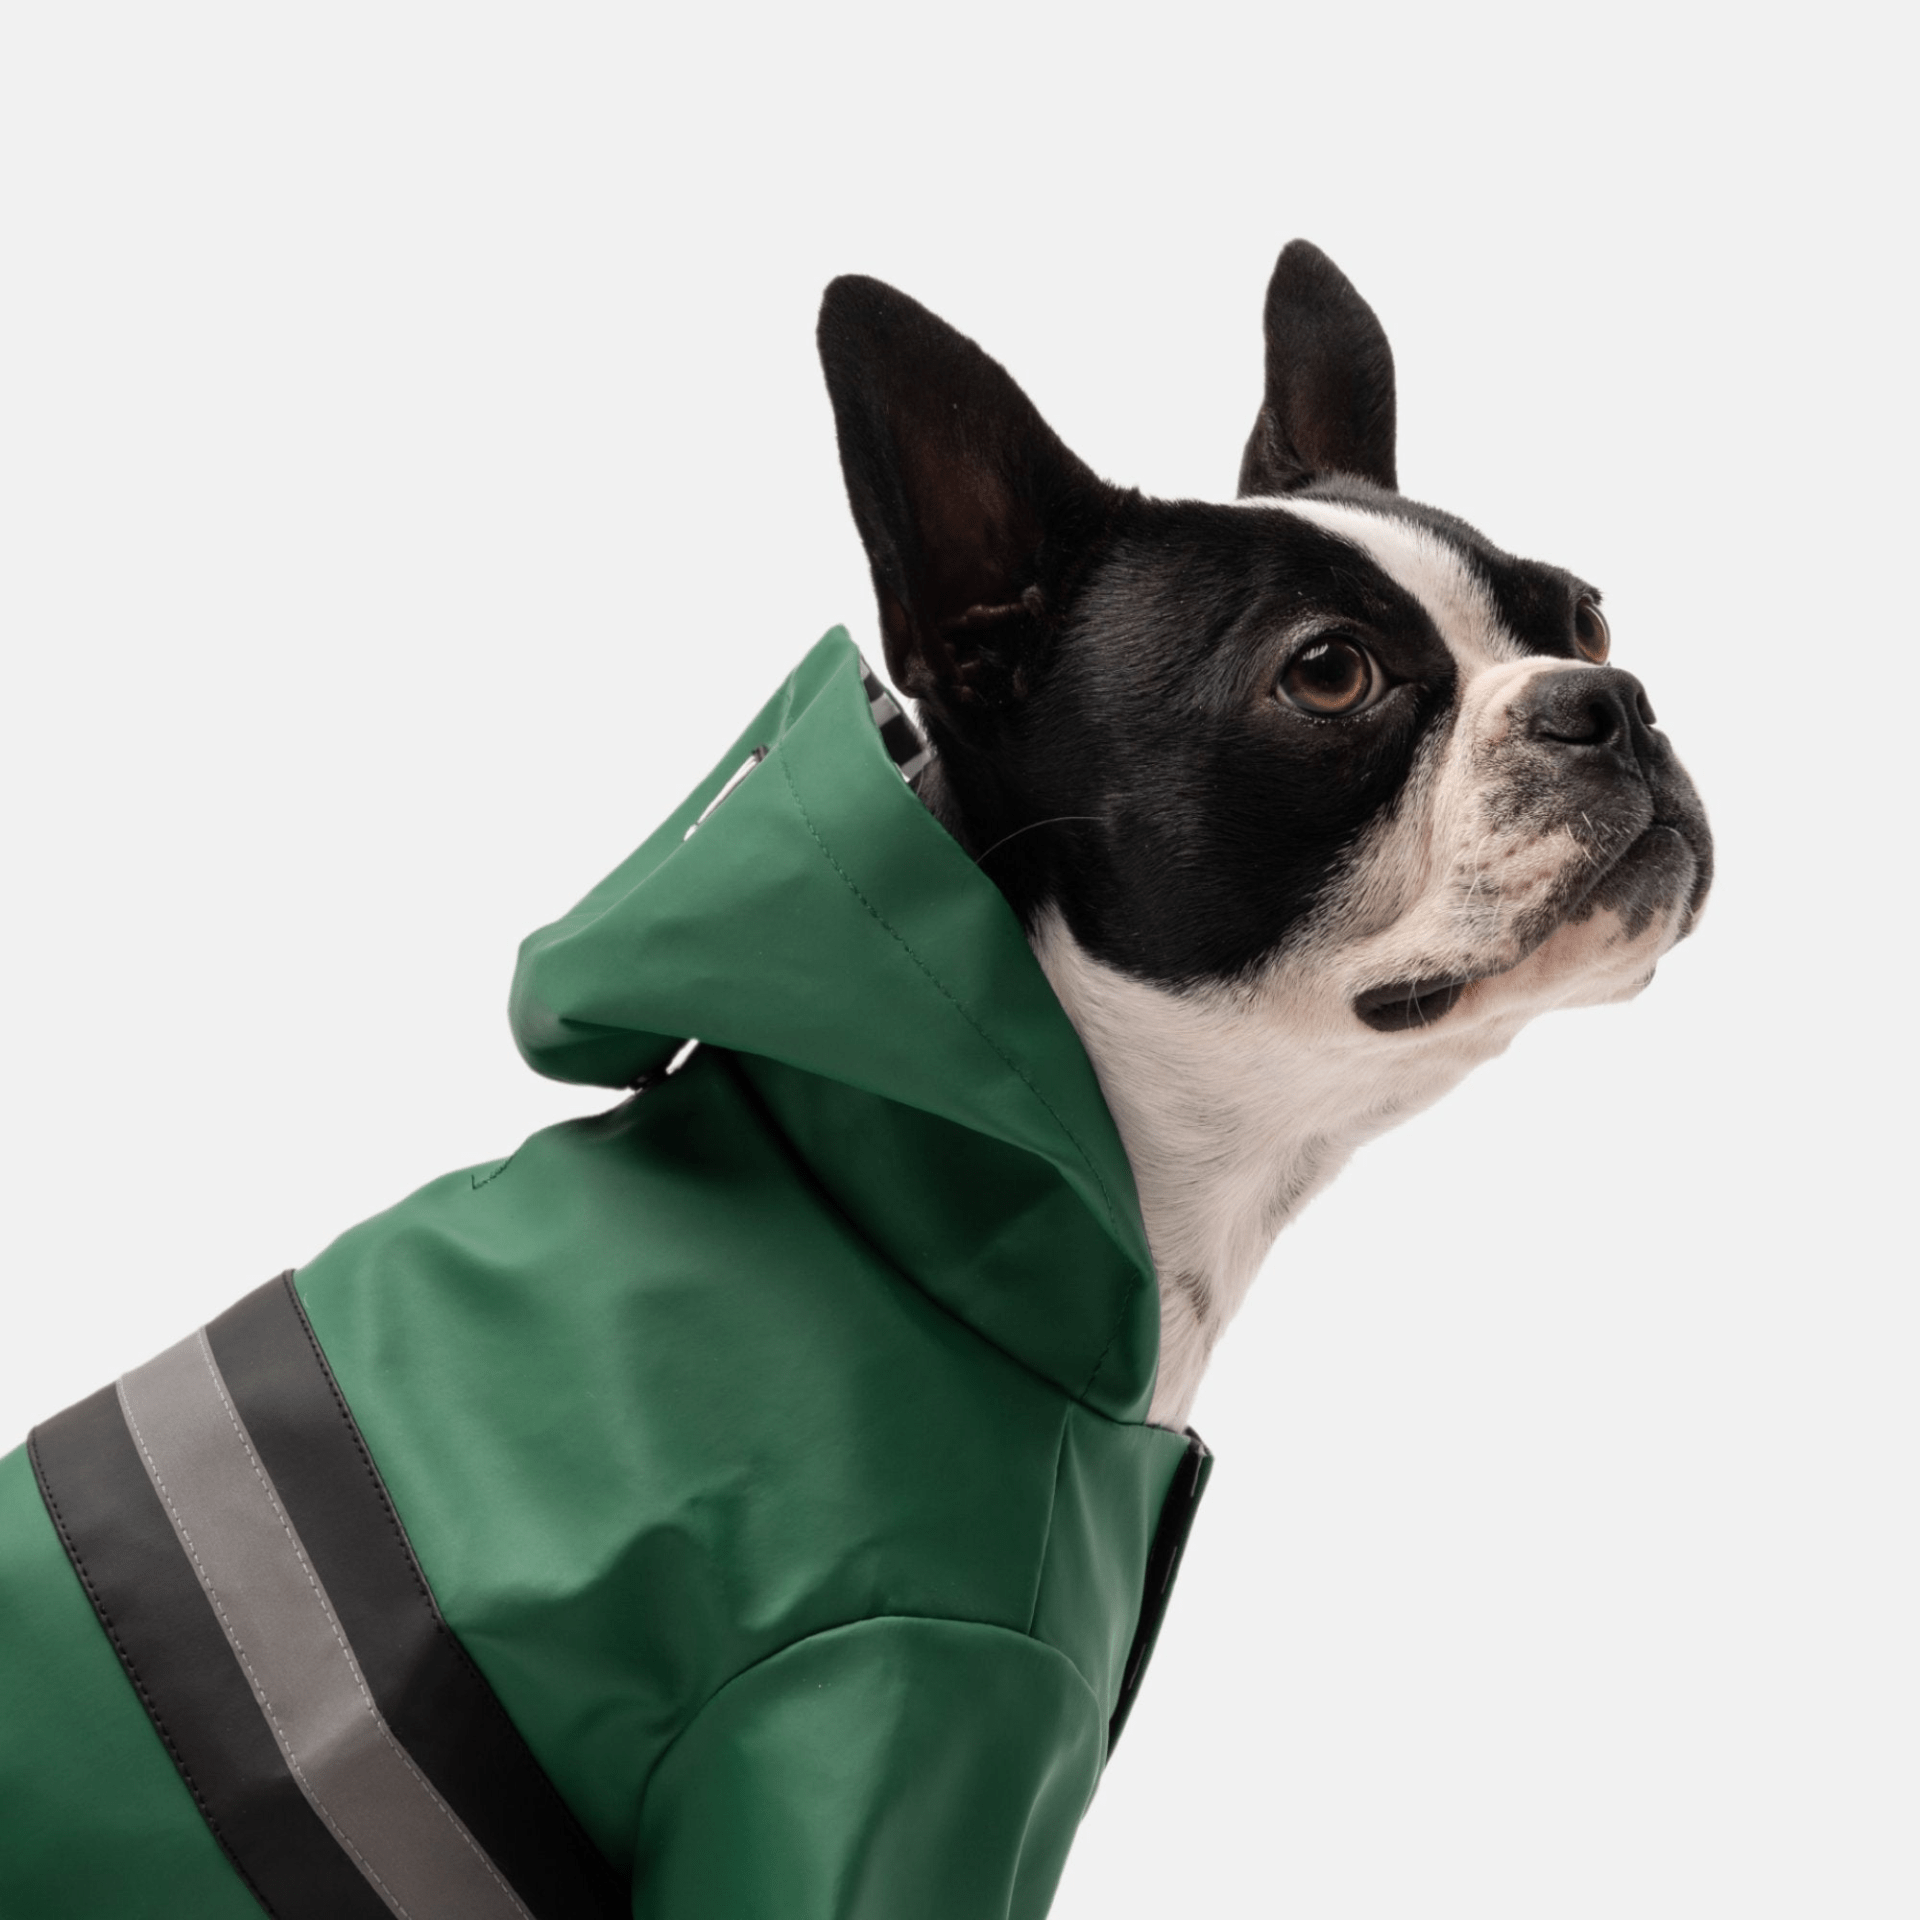 Dog and Pet Stuff Dog Raincoat - Green